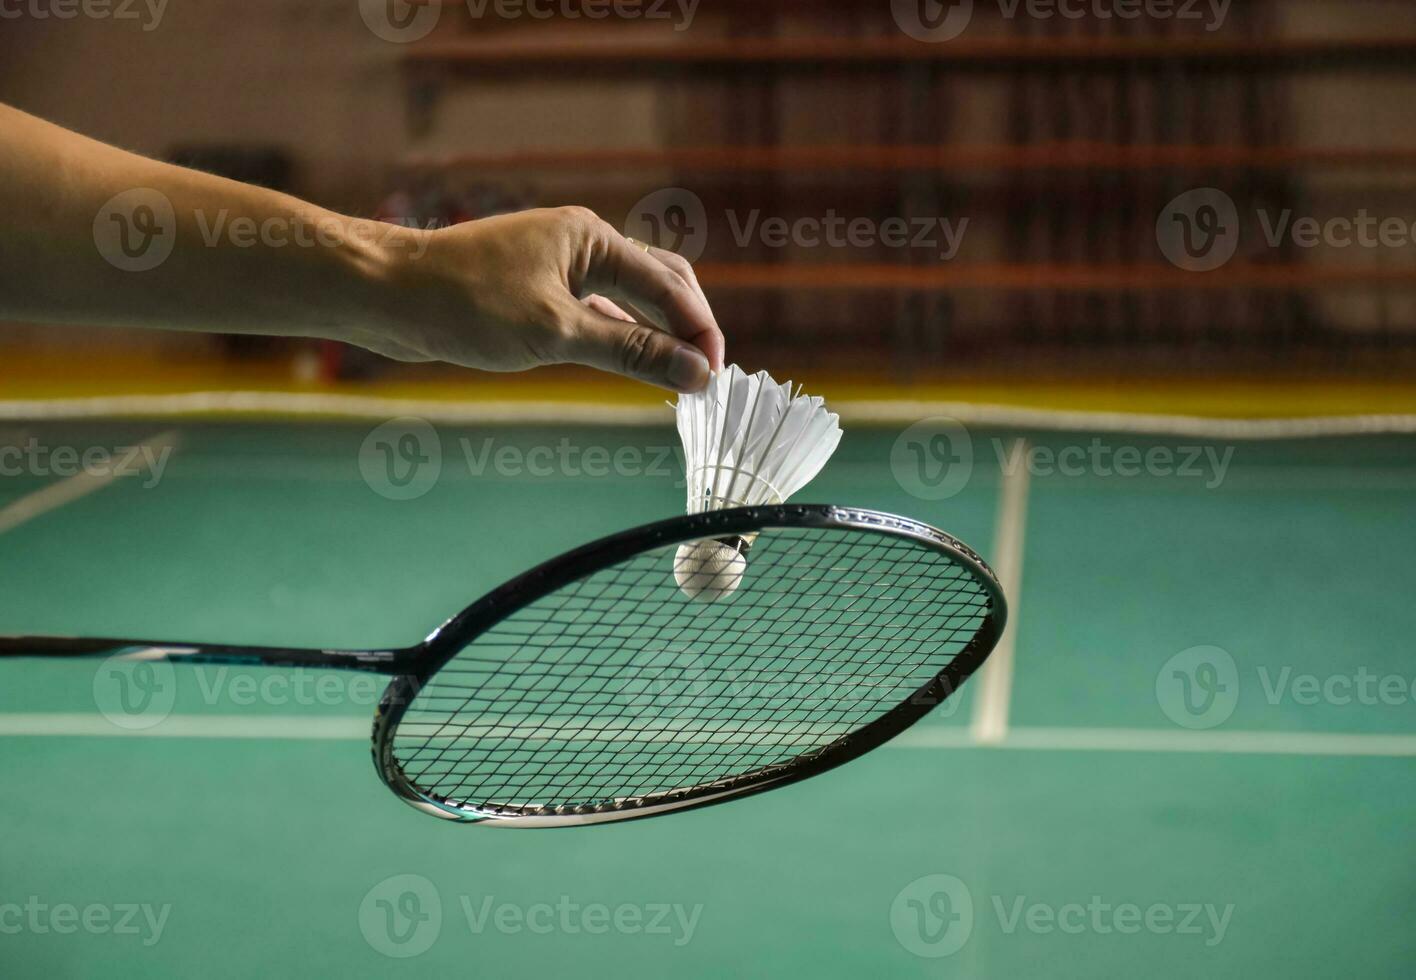 bádminton jugador sostiene raqueta y blanco crema volante en frente de el red antes de servicio eso a otro lado de el Corte foto